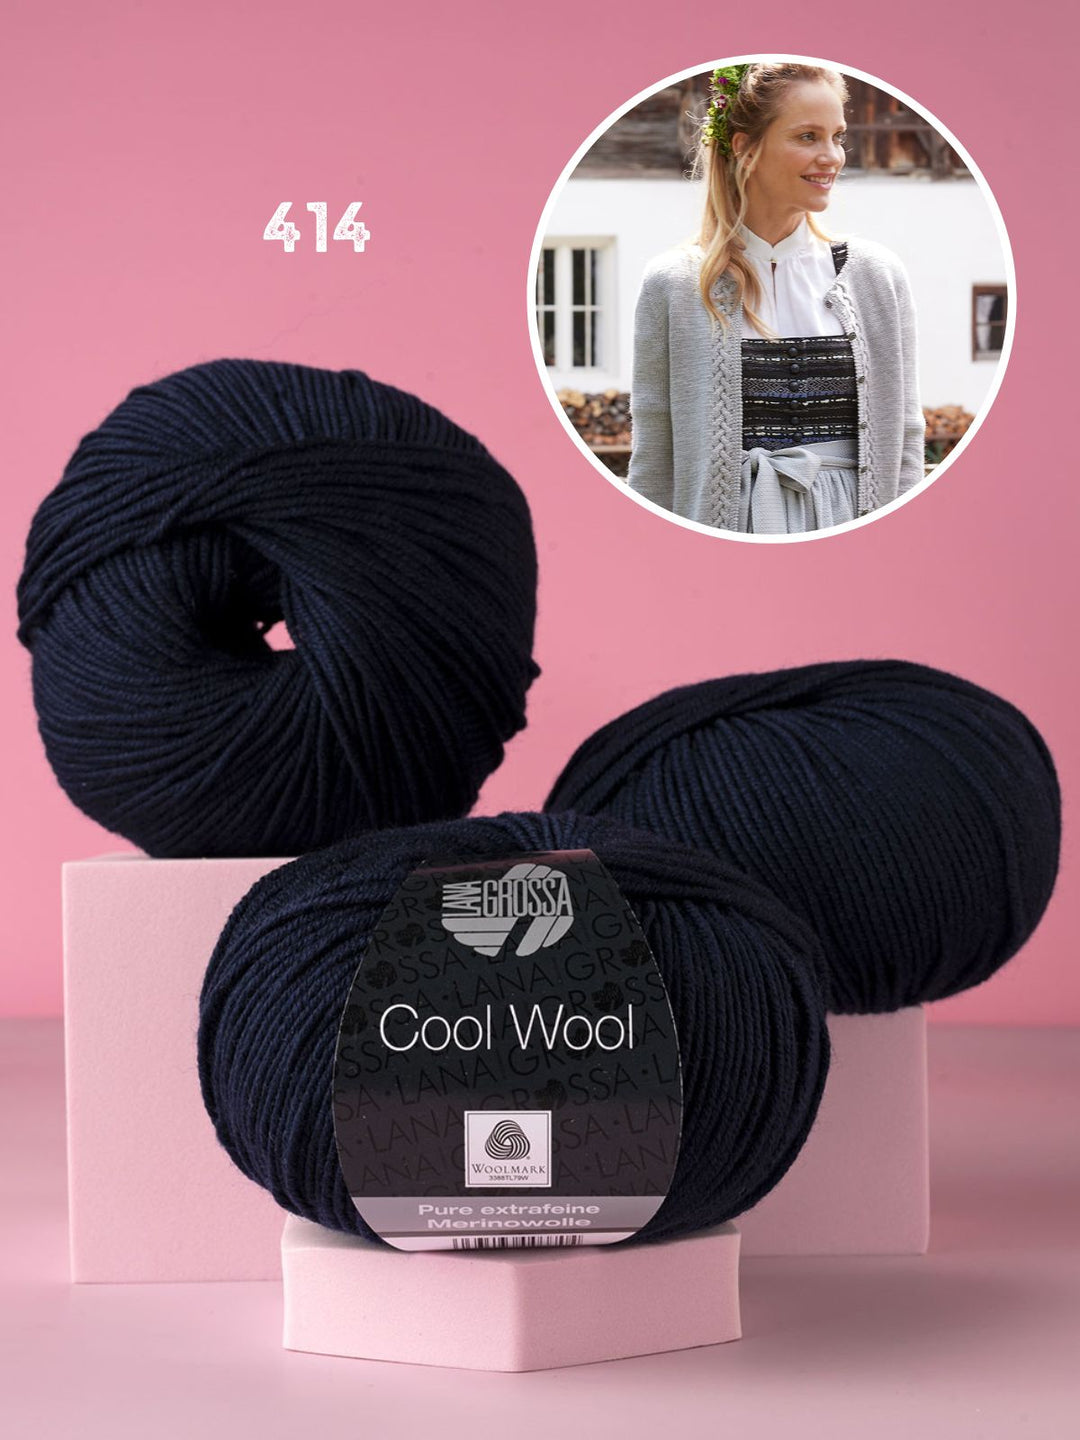 Breipakket Cool Wool vestje met kabels